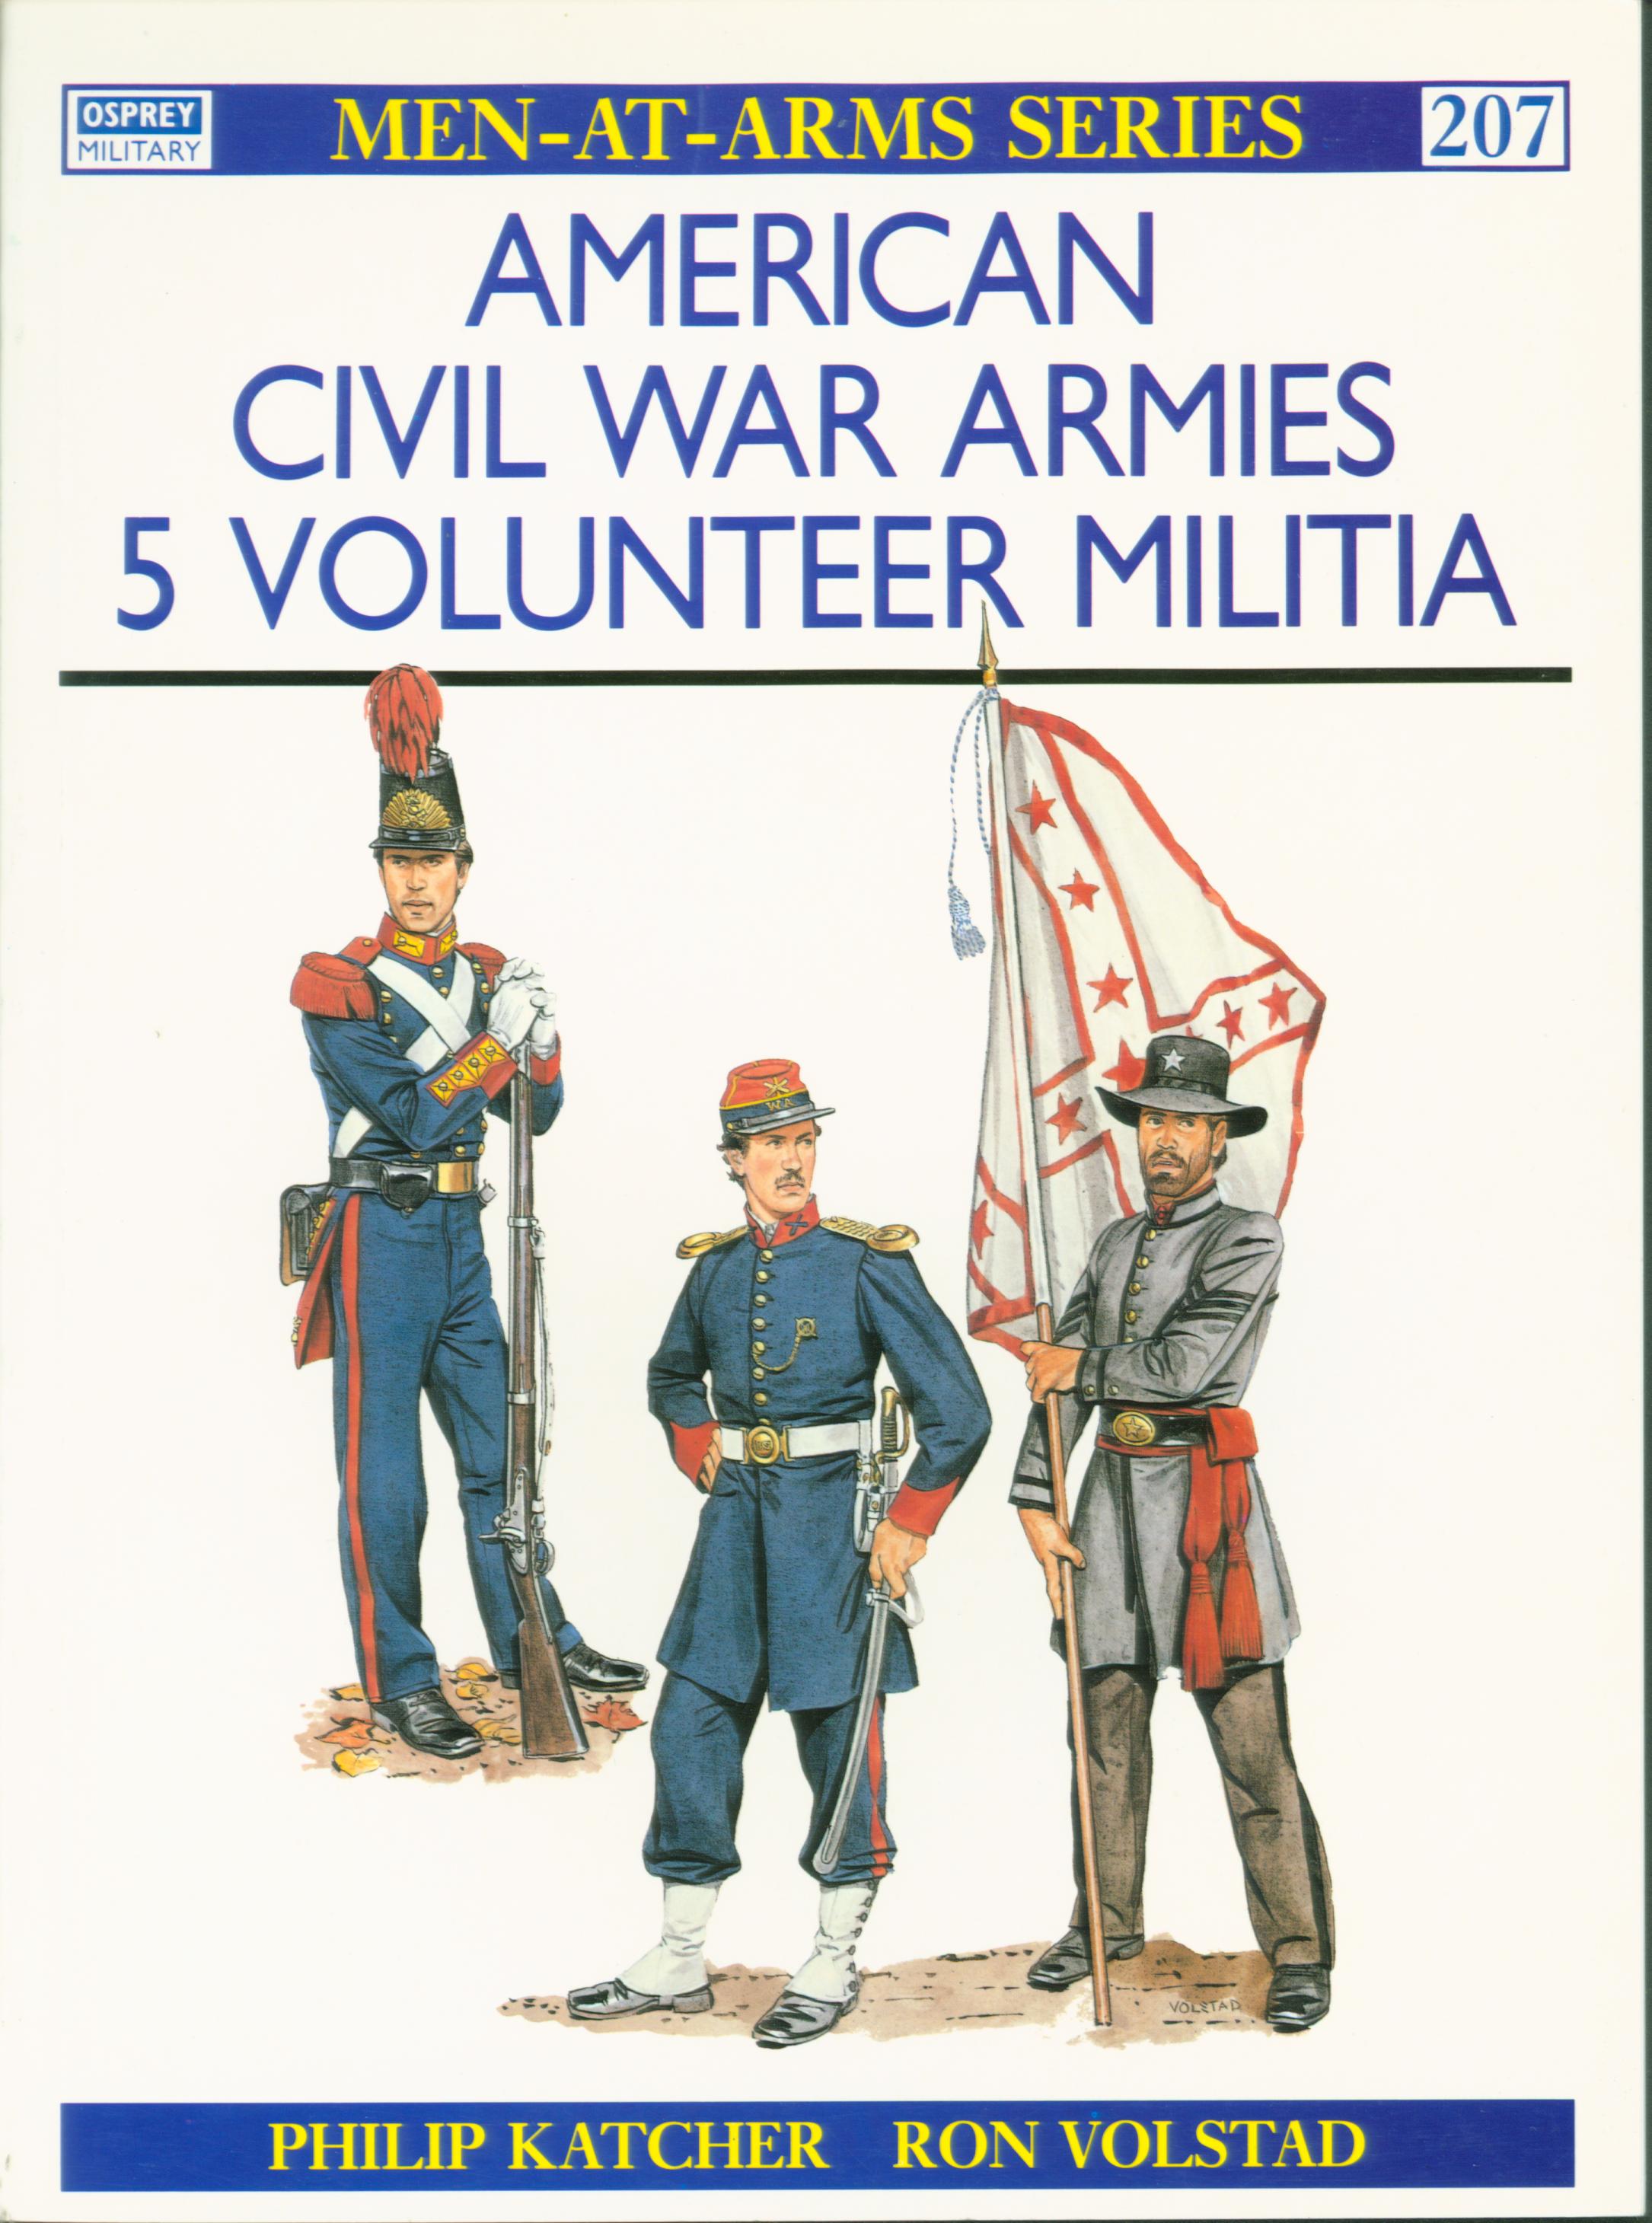 AMERICAN CIVIL WAR ARMIES: (5) volunteer militia.